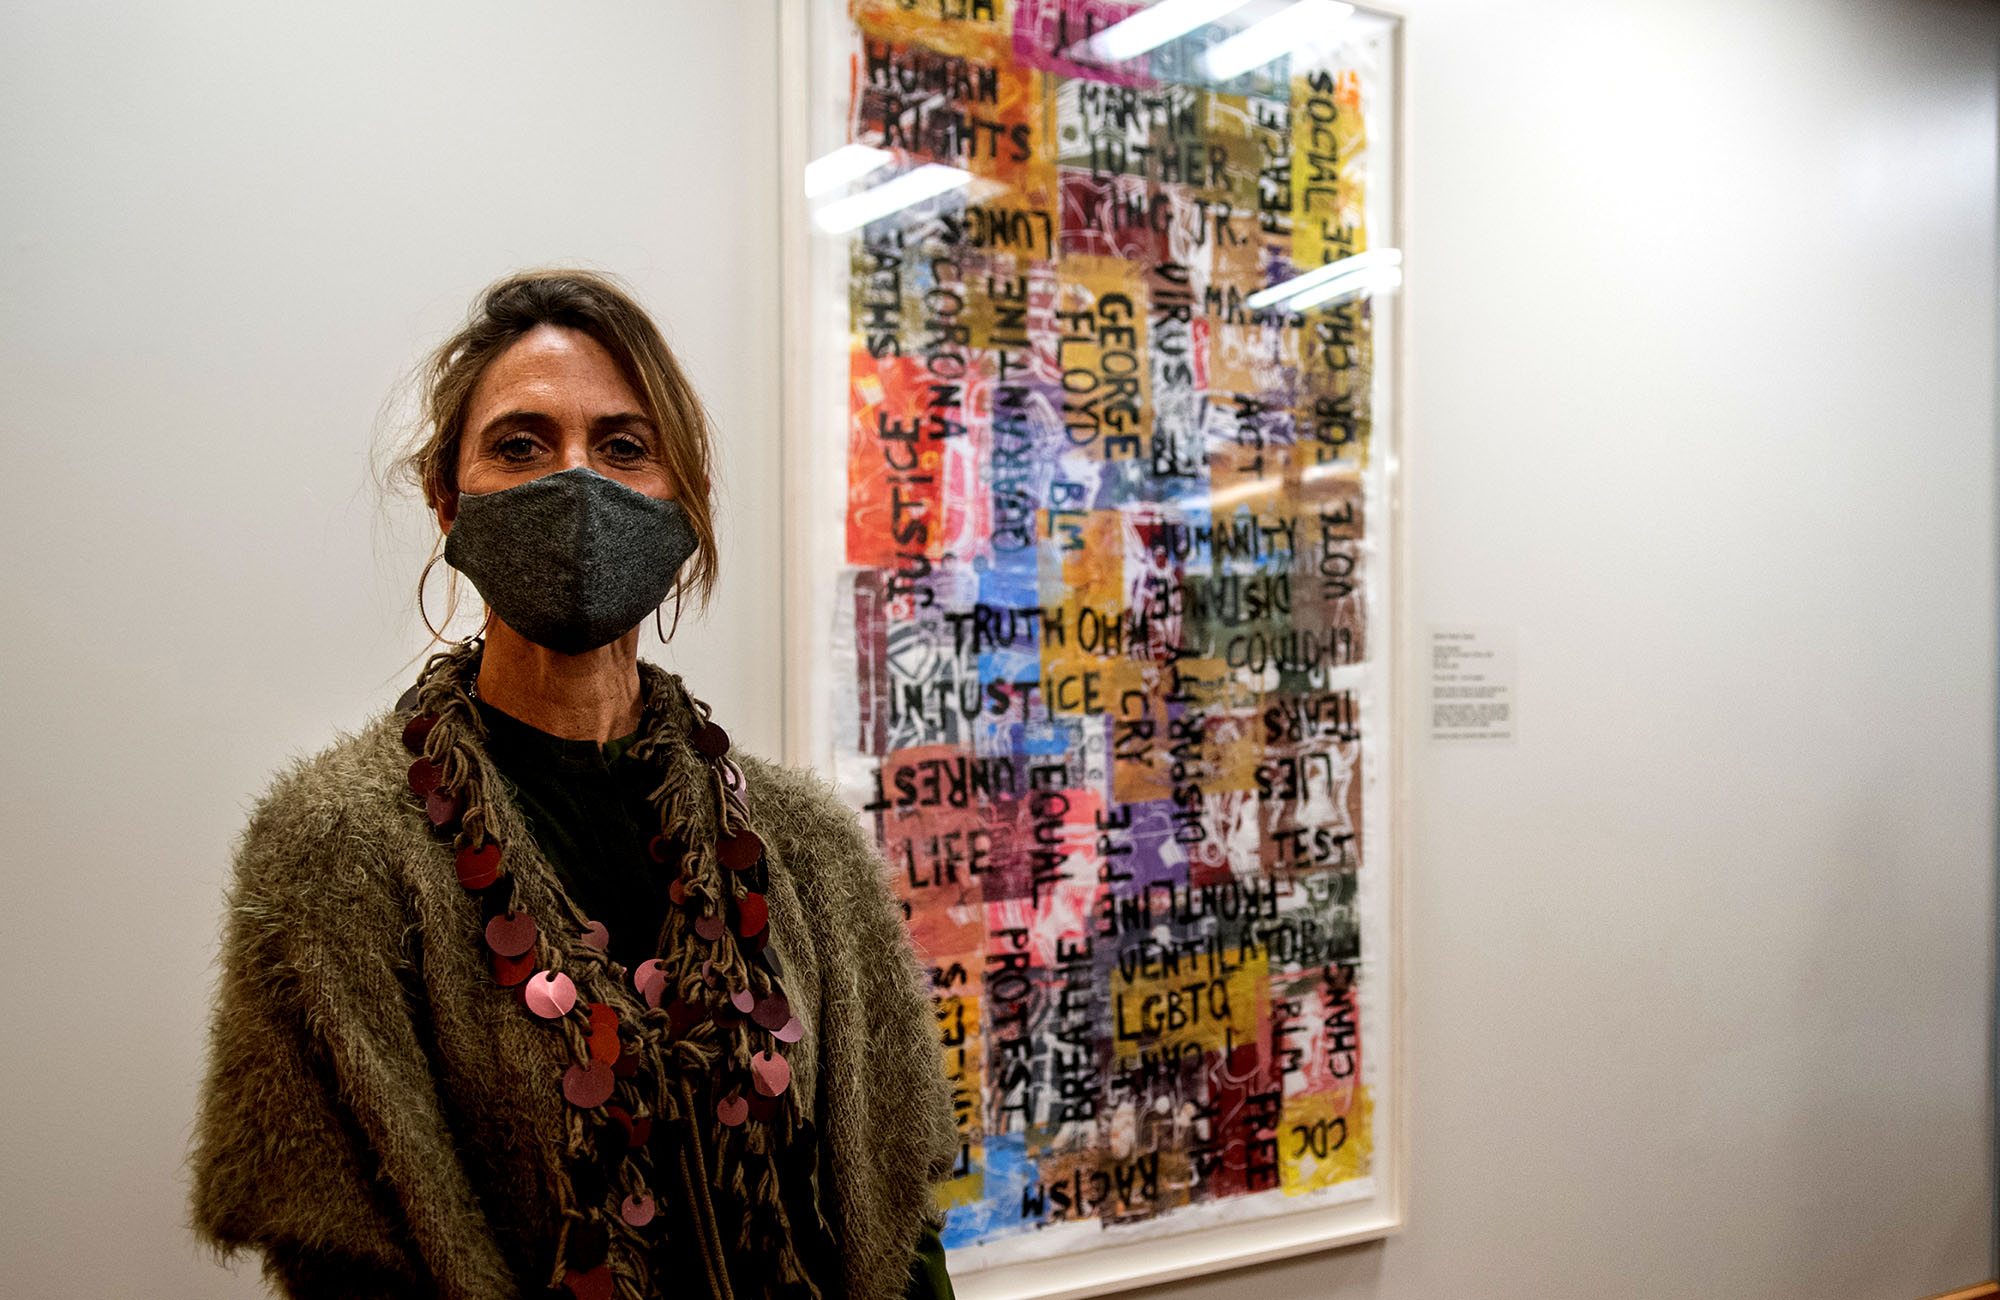 Artist Frankie Slaughter stands beside her artwork spring 2020